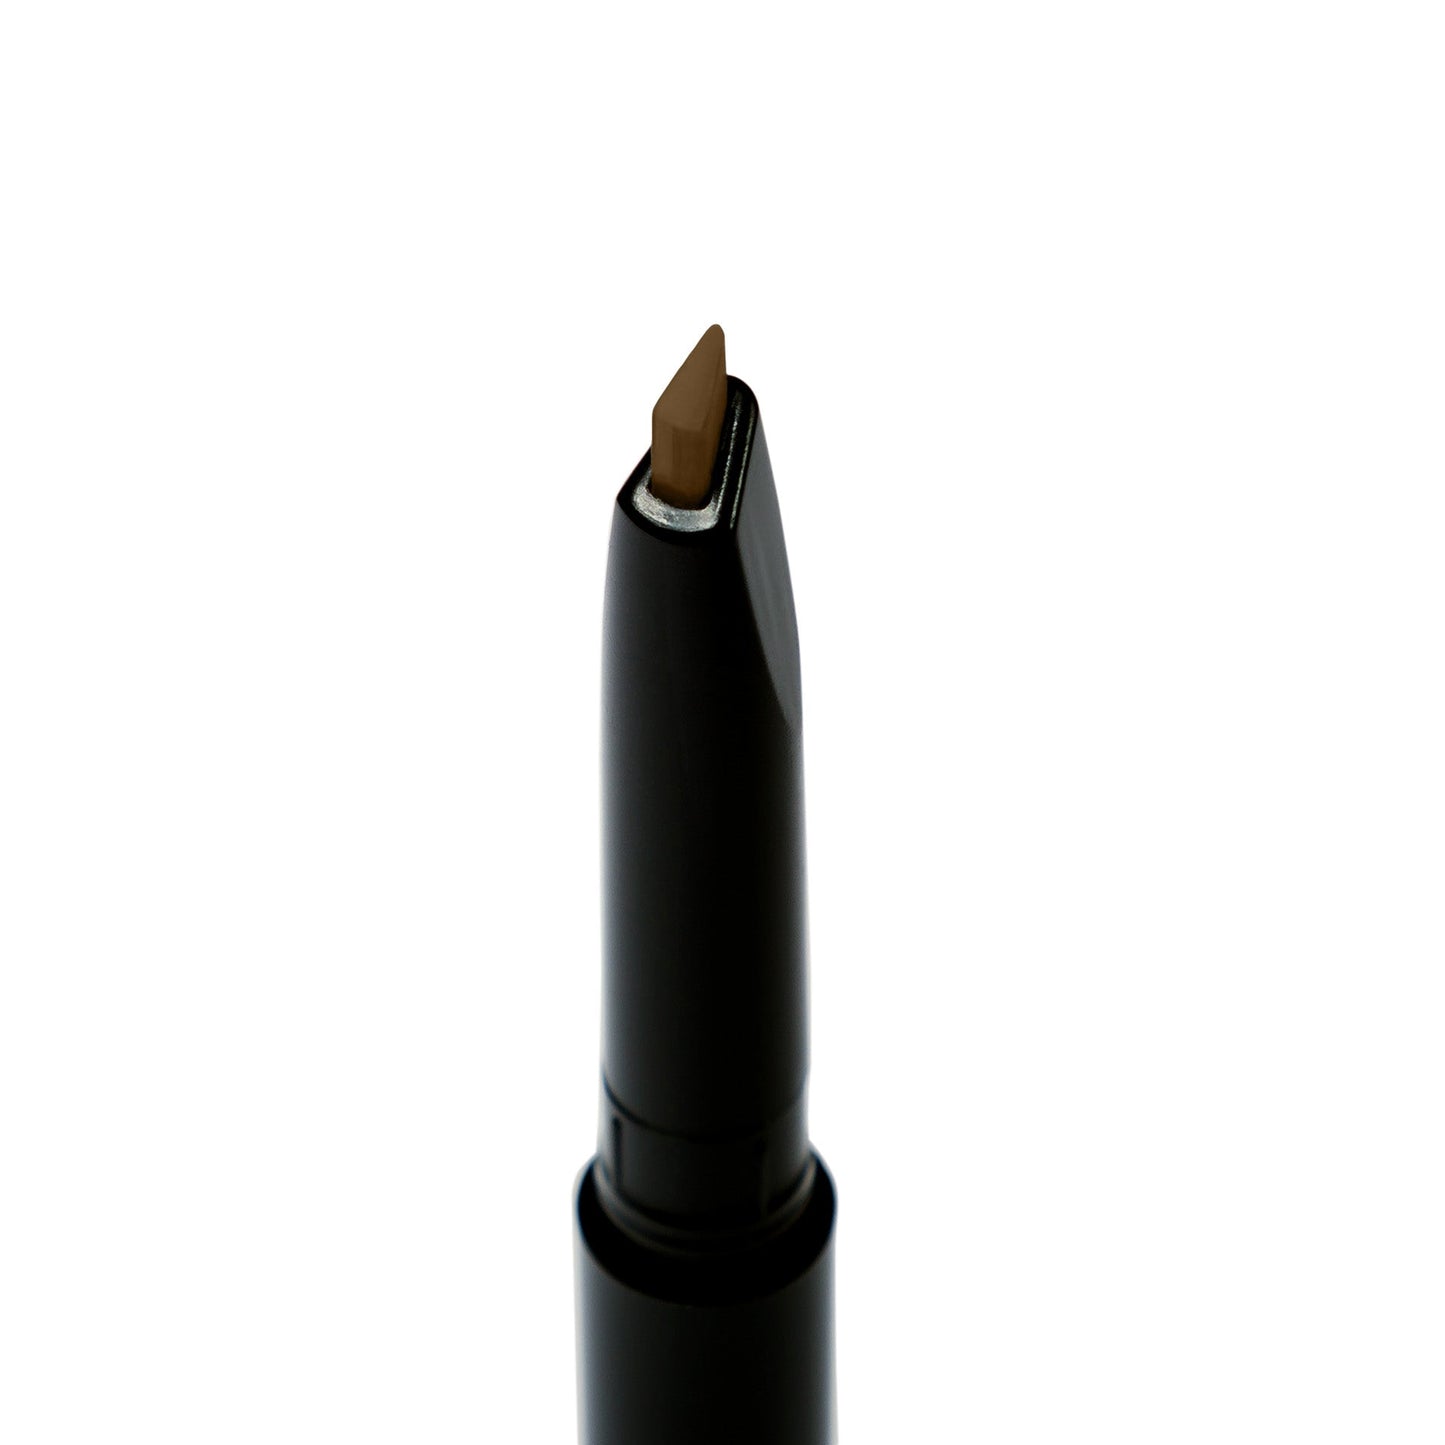 Ultimate Brow Retractable Pencil - Ash Brown